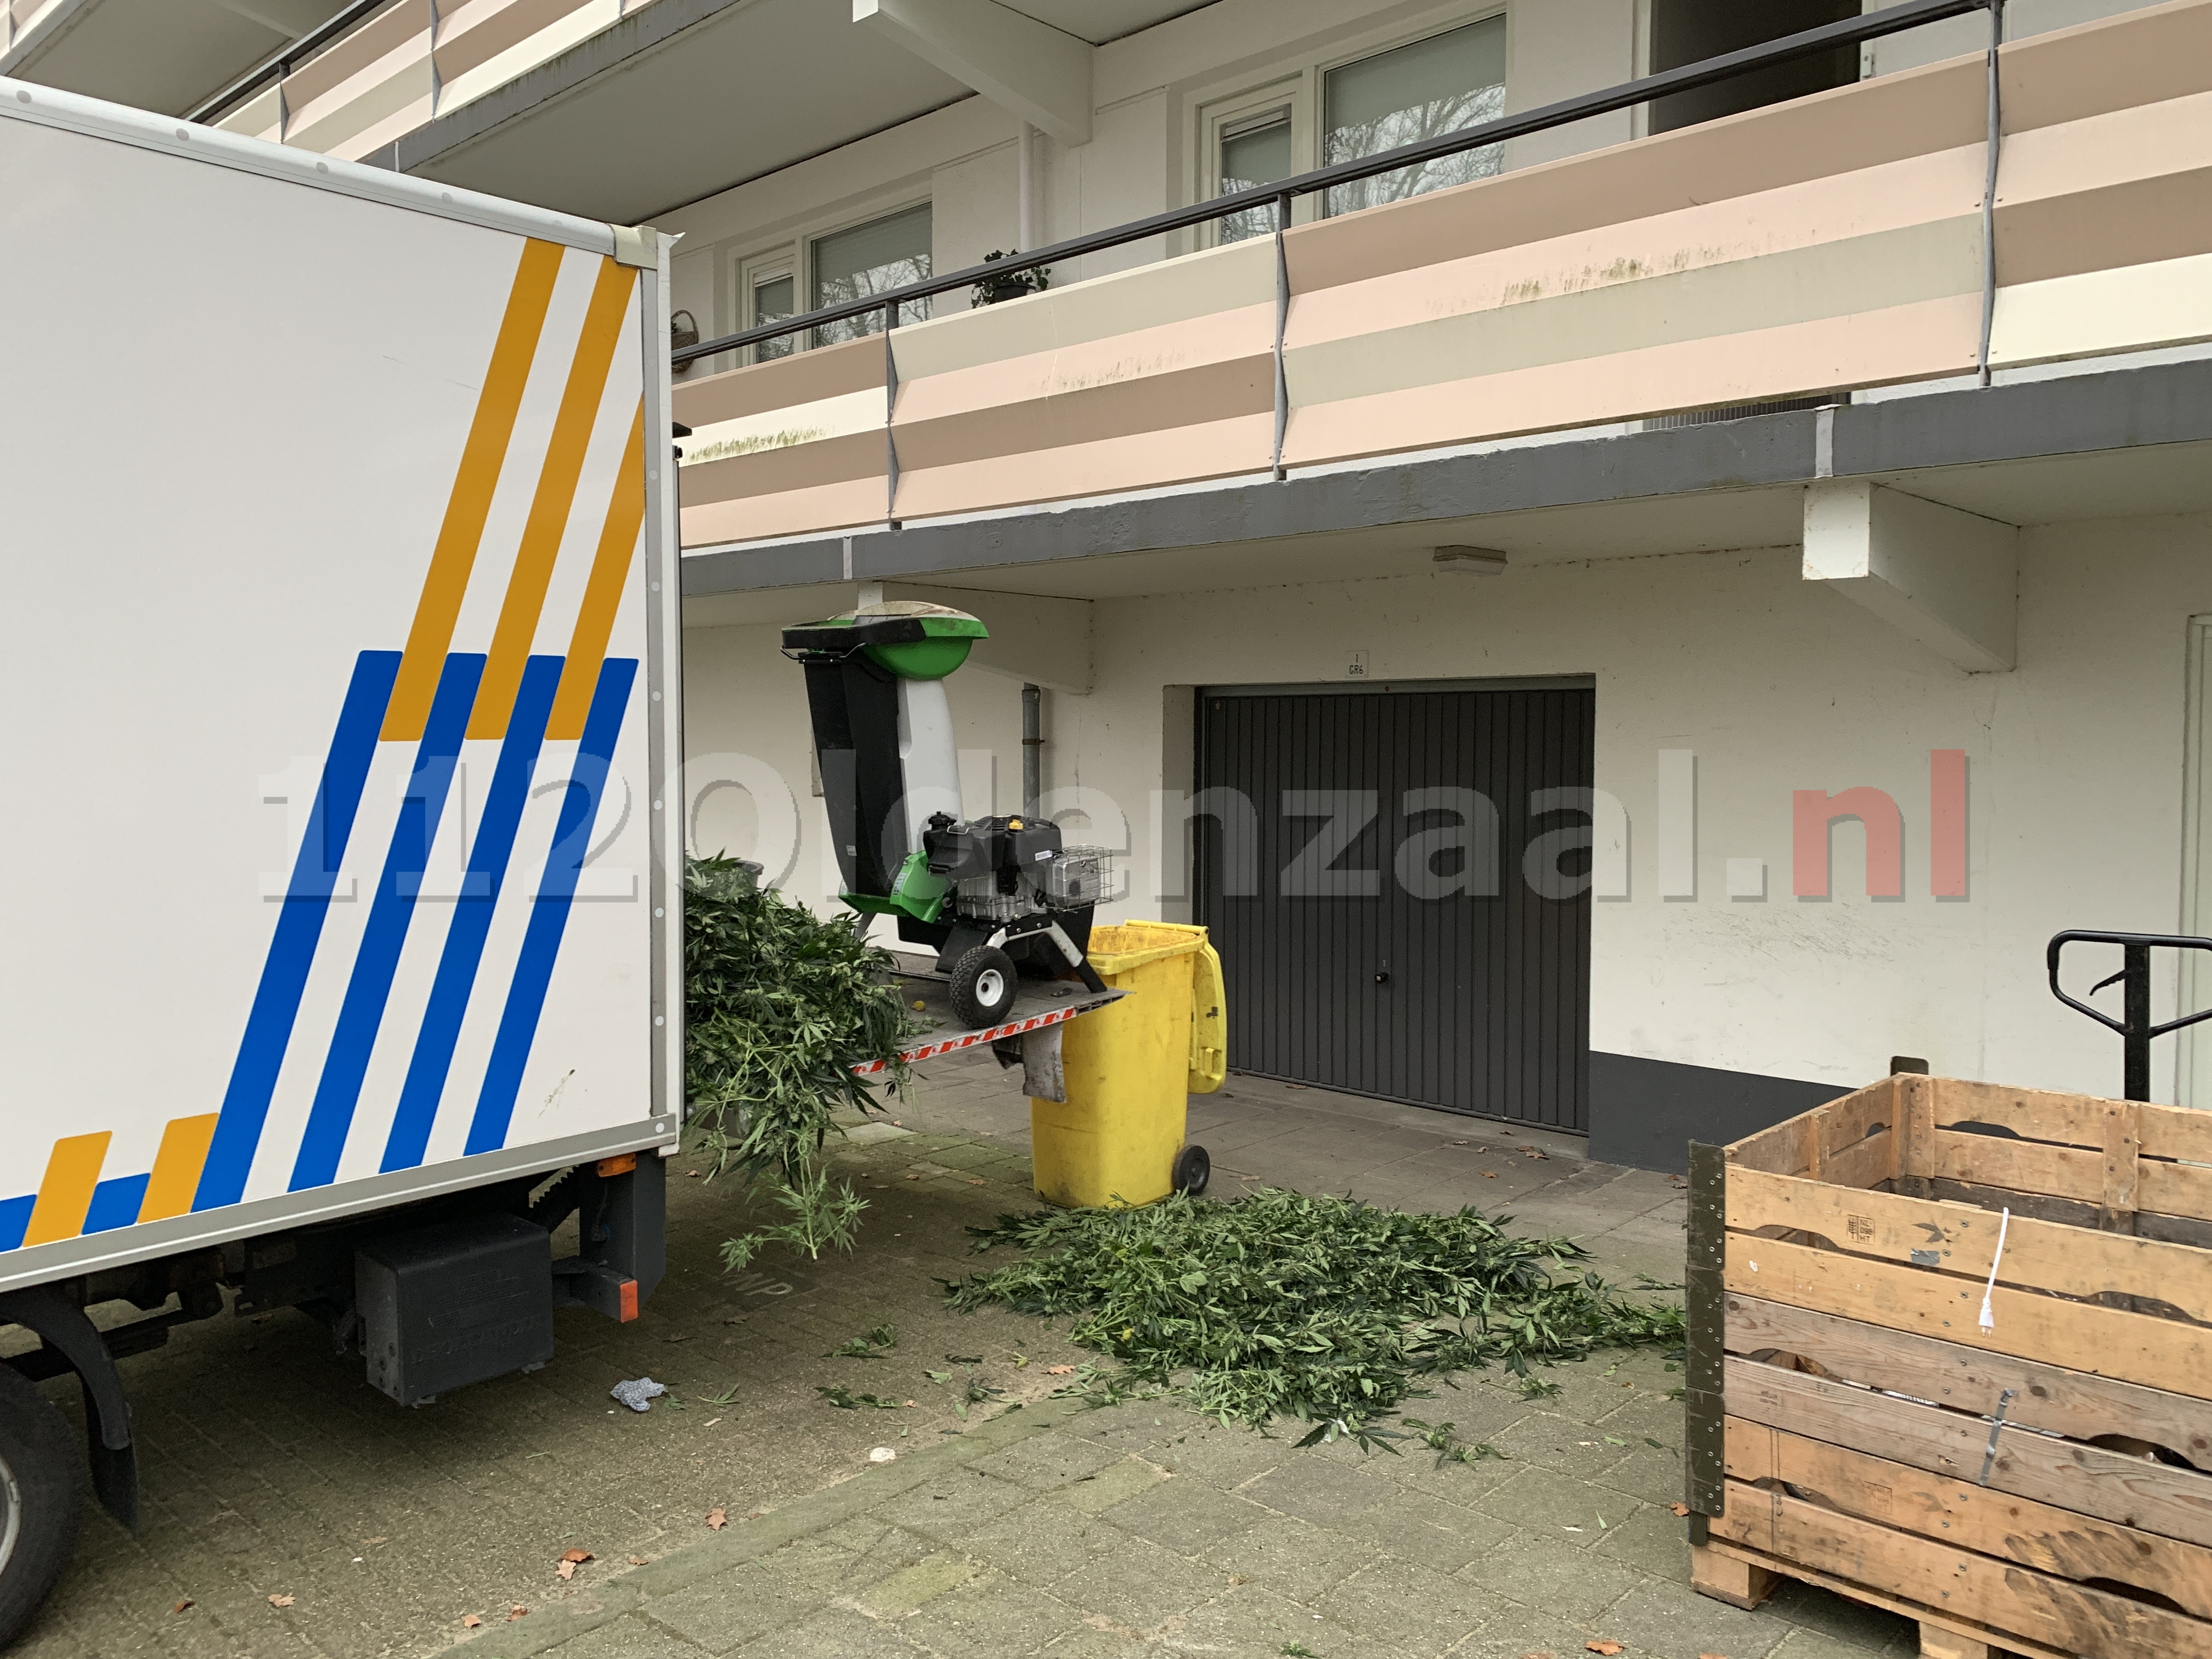 UPDATE: 266 hennepplanten aangetroffen in flatwoning Oldenzaal; bewoner aangehouden